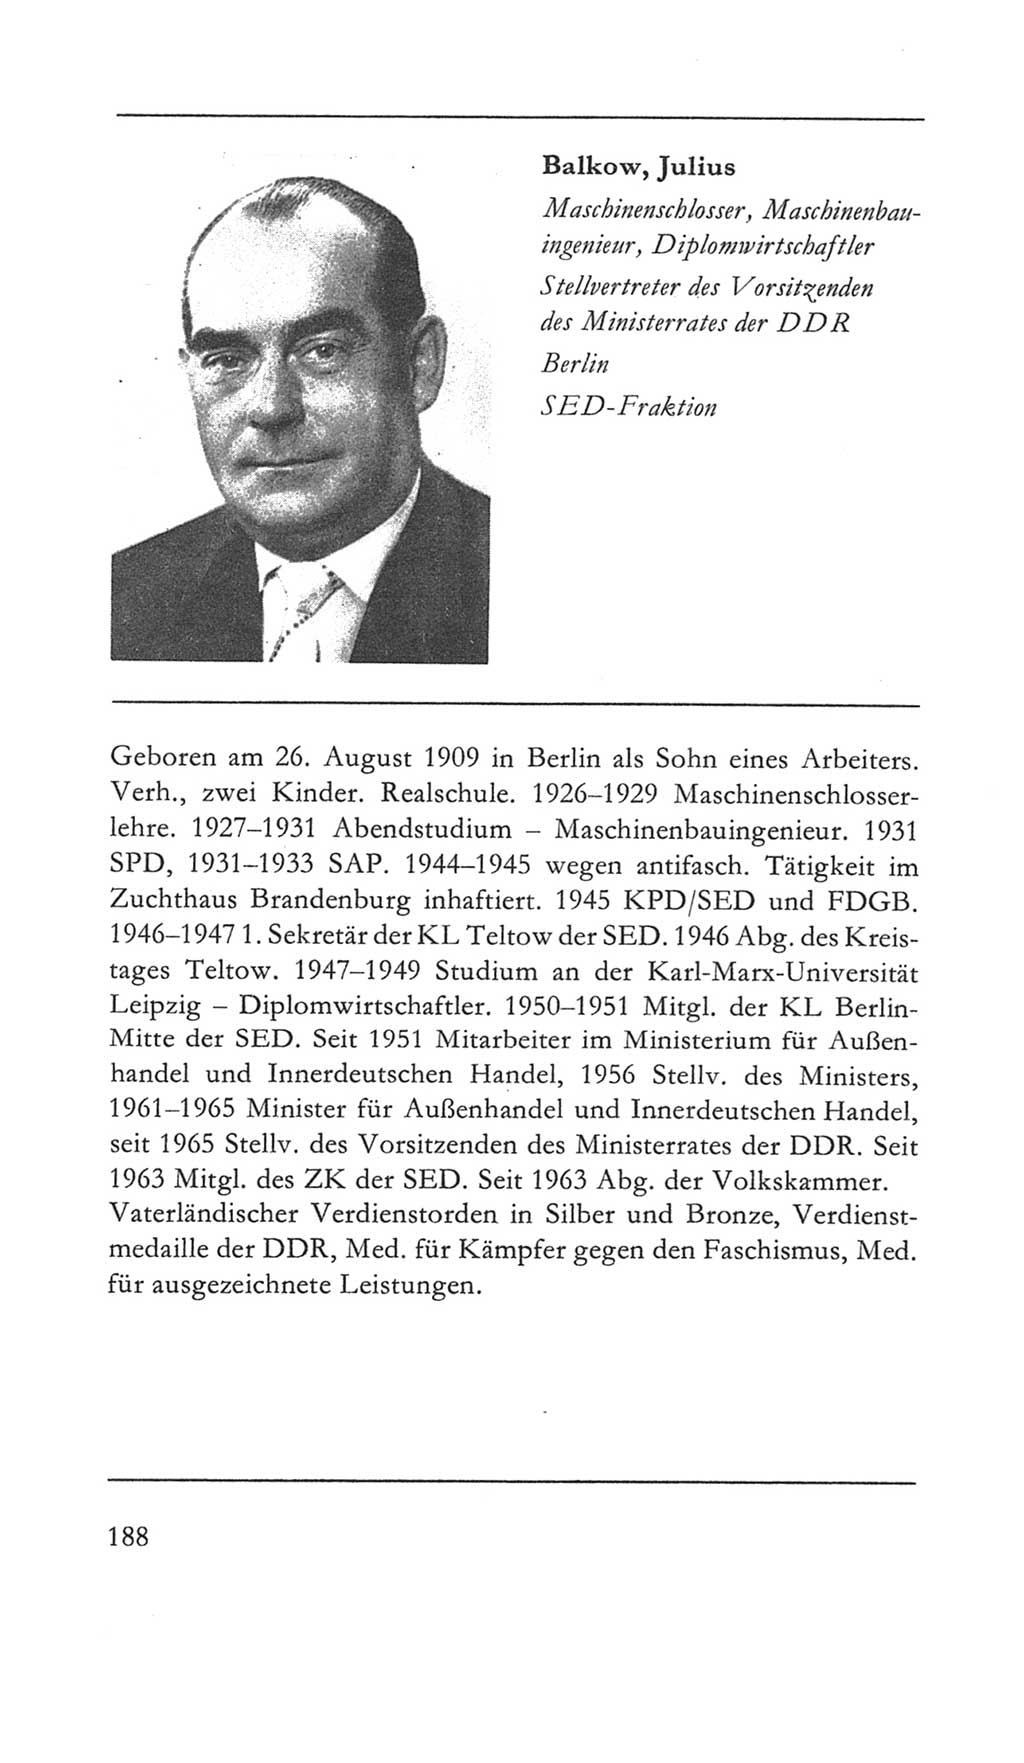 Volkskammer (VK) der Deutschen Demokratischen Republik (DDR) 5. Wahlperiode 1967-1971, Seite 188 (VK. DDR 5. WP. 1967-1971, S. 188)